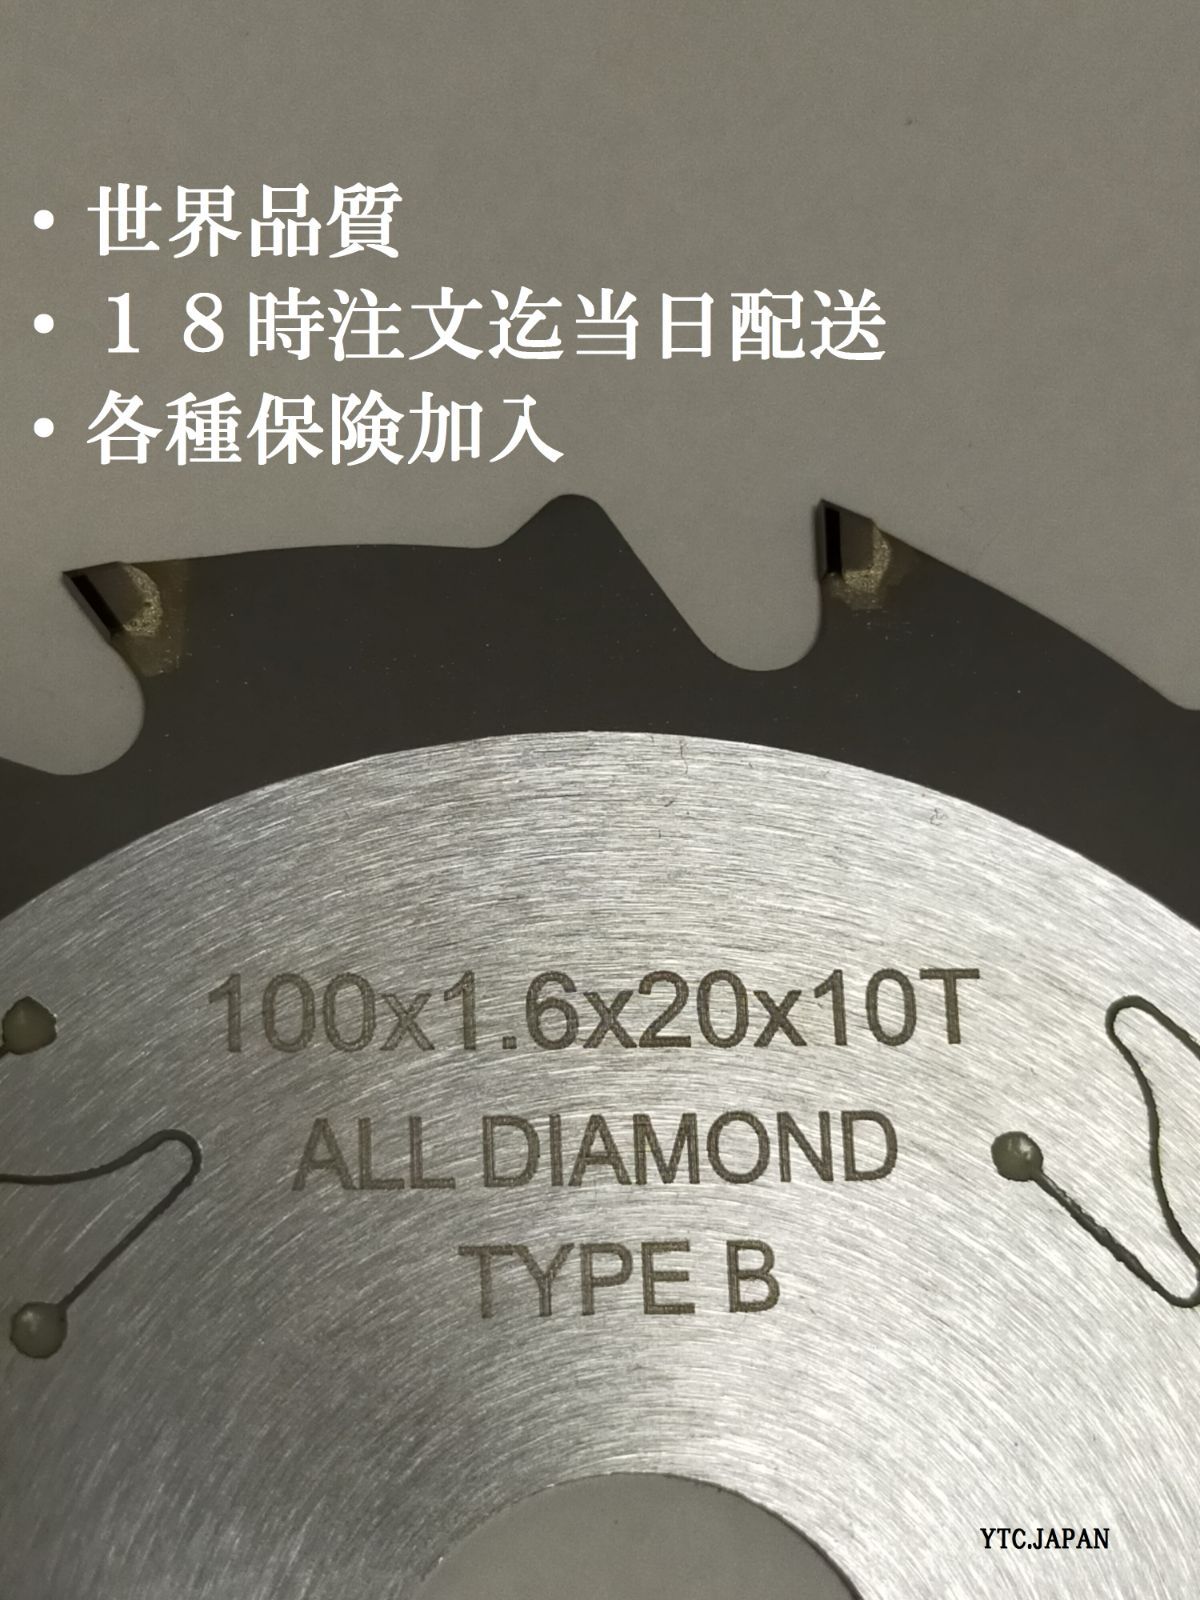 ☆3枚☆新商品☆100mm10T☆タイプBT 高品質オールダイヤチップソー